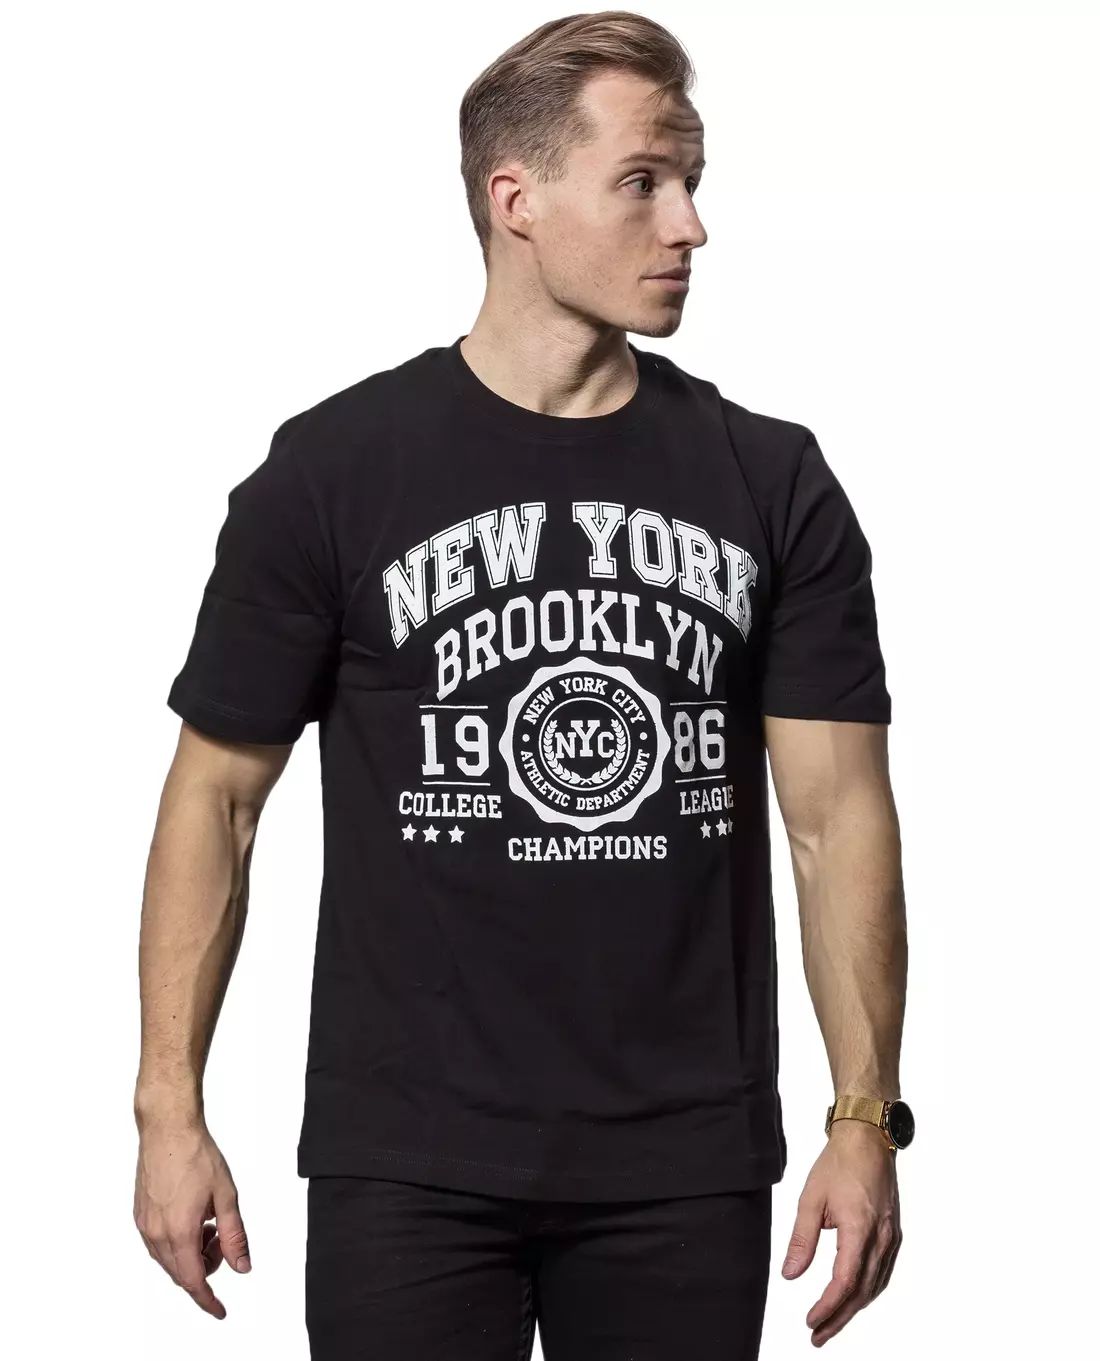 NY T-Shirt Black Carisma